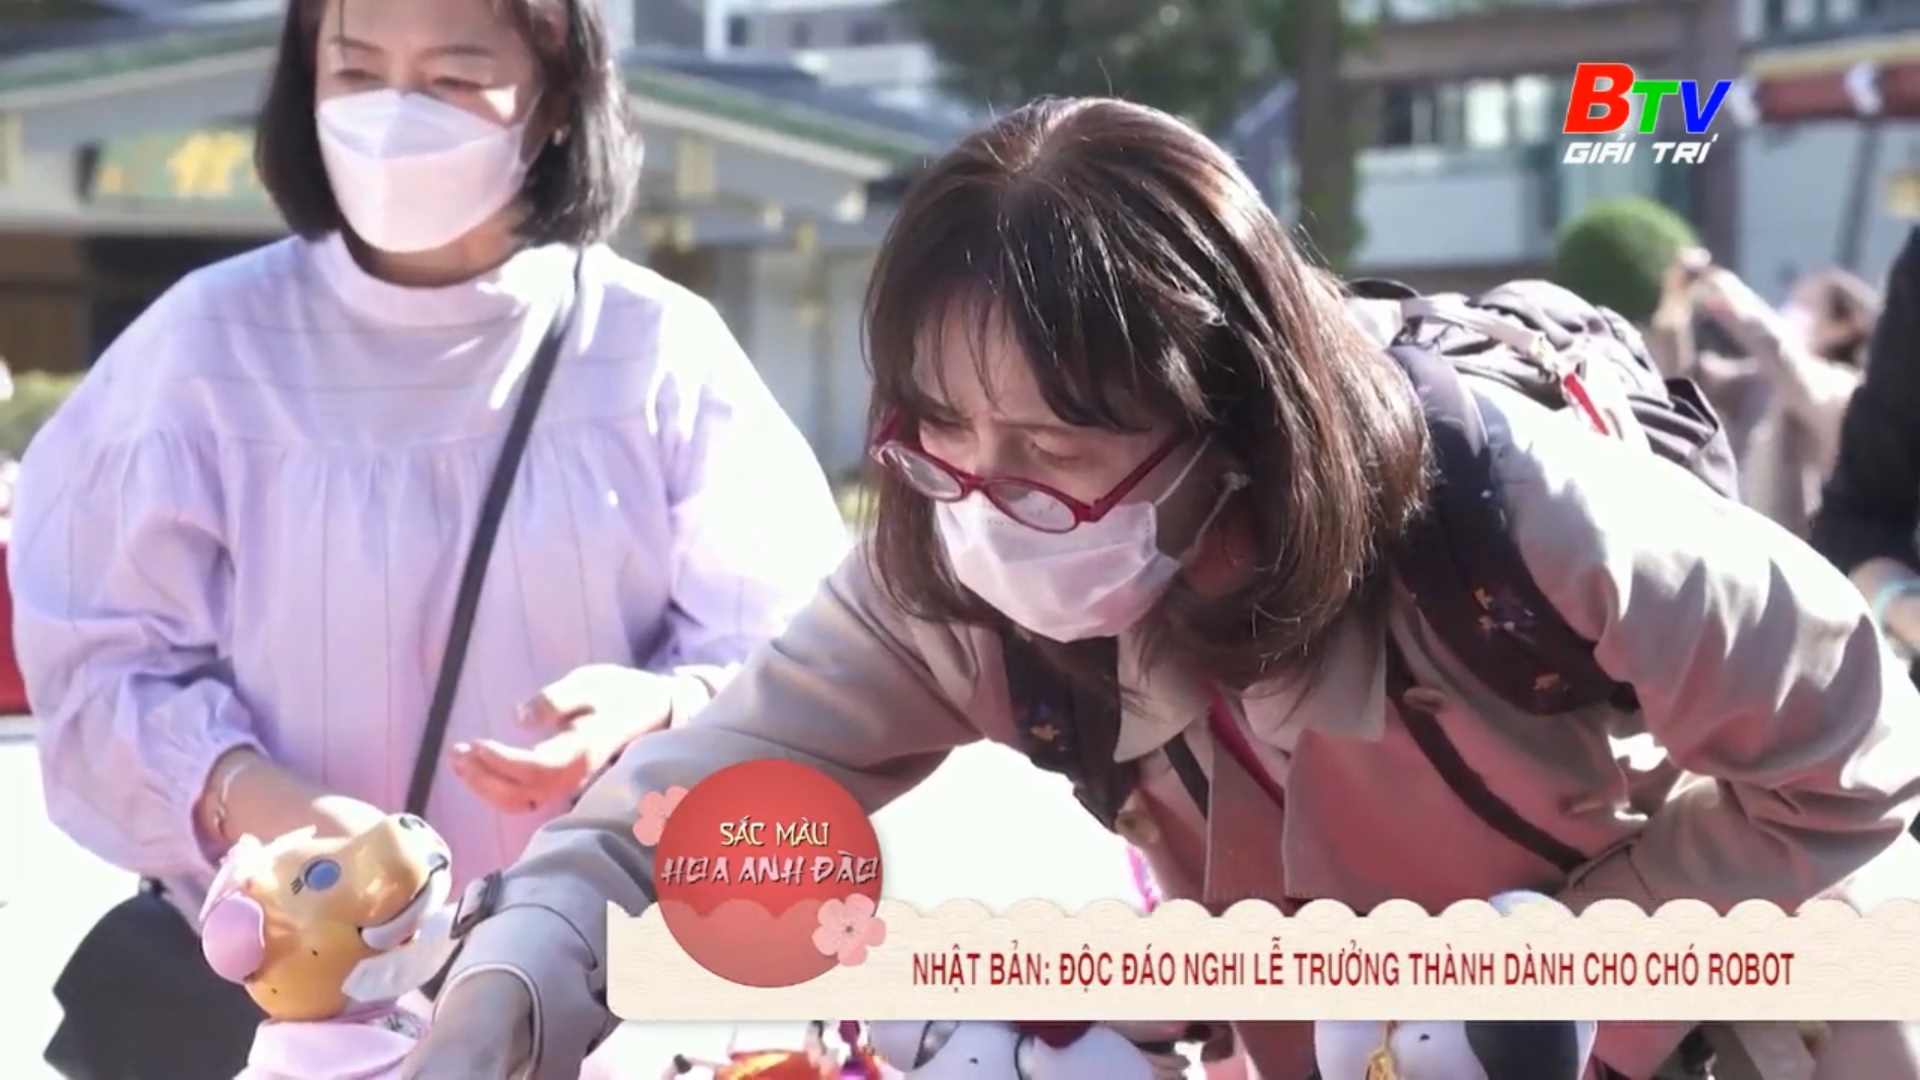 Nhật Bản – Độc đáo nghi lễ trưởng thành dành cho chó Robot